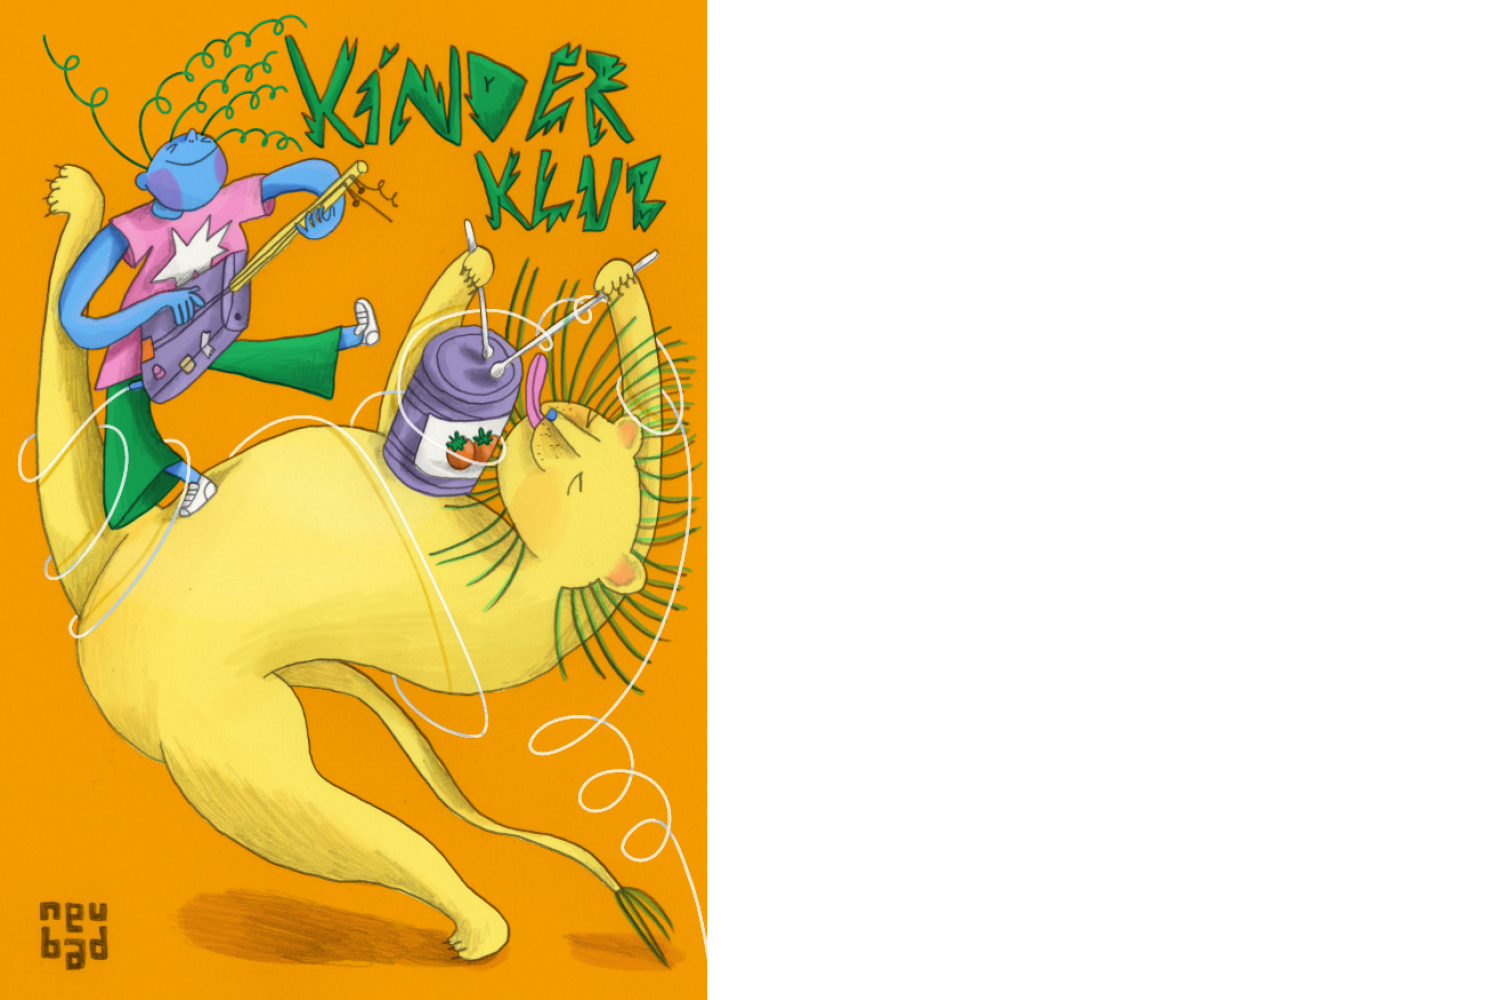 Illustration für den Kinderklub Workshop: Upcycling mit einem gelben Löwen, der auf einer Dose trommelt und einer blauen Figur mit Gitarre